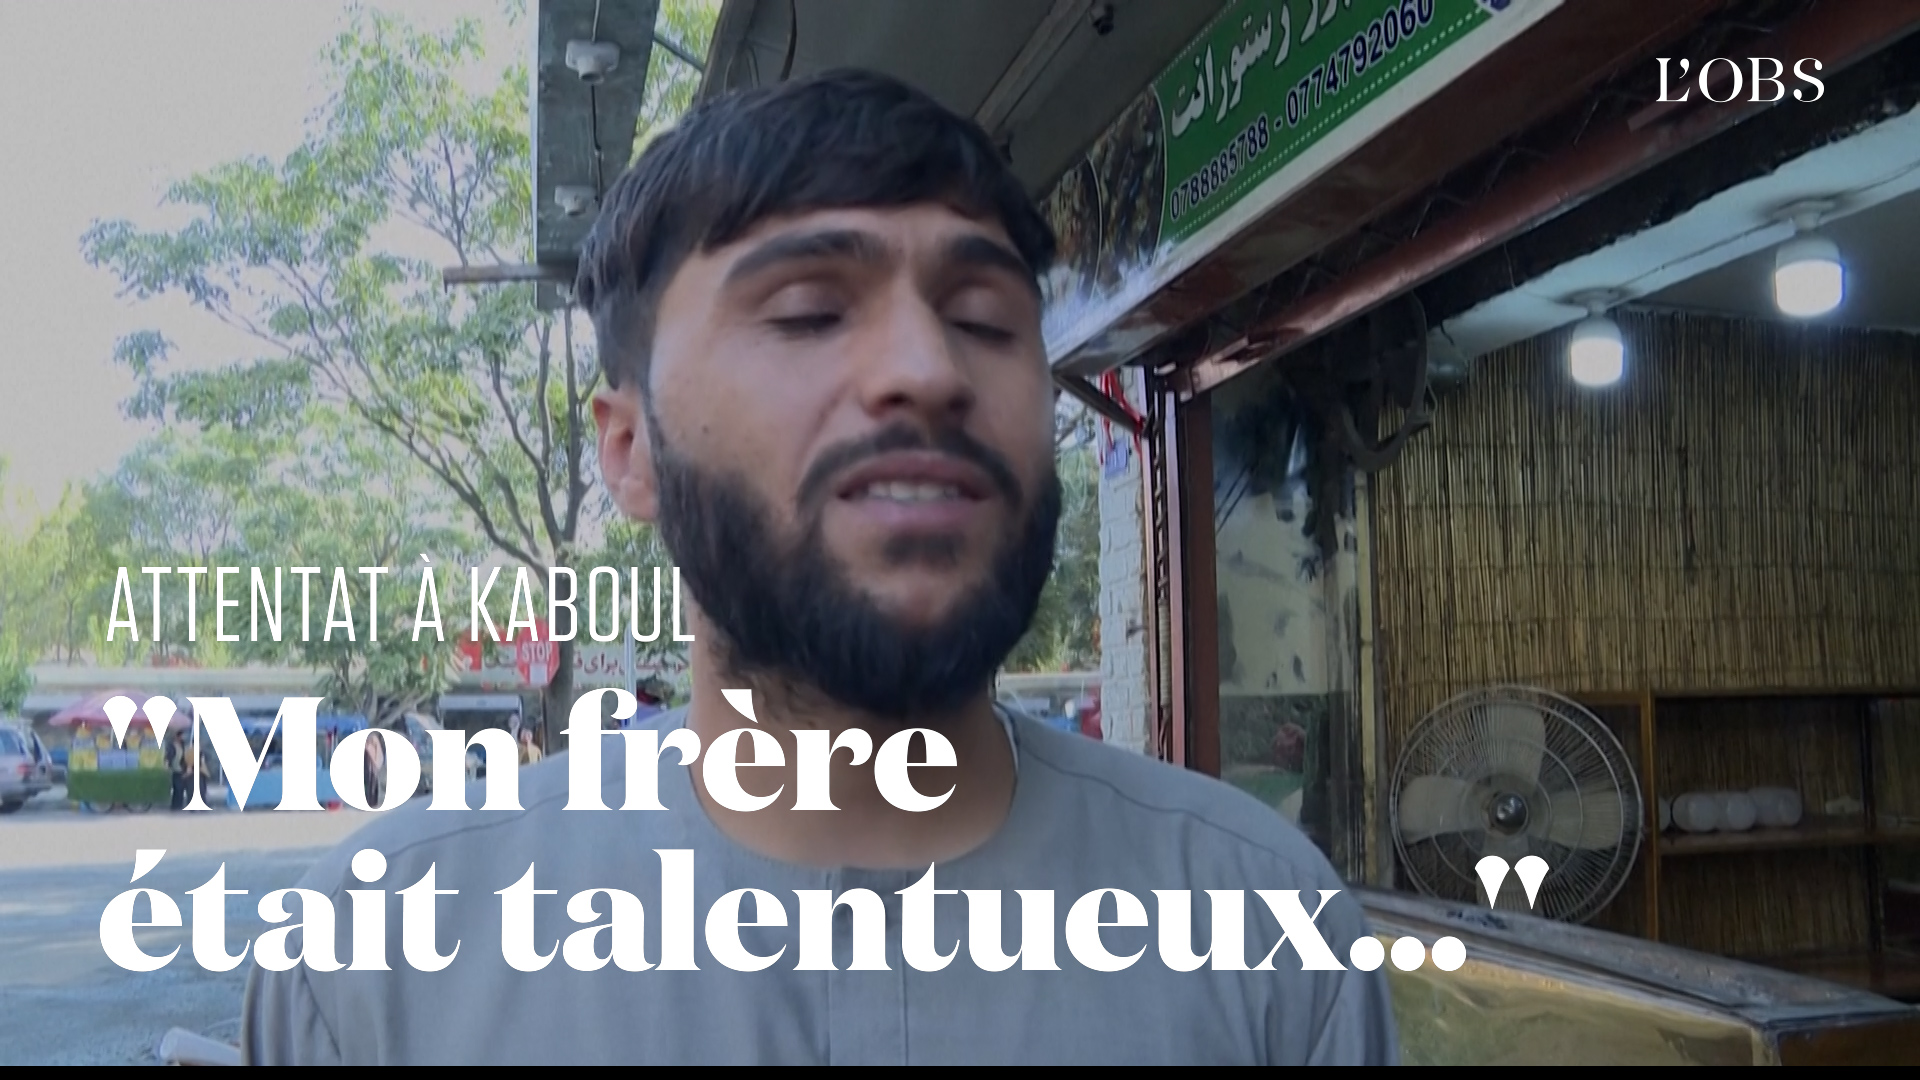 Après l'attentat de l'aéroport de Kaboul, cet Afghan témoigne de la perte de son frère